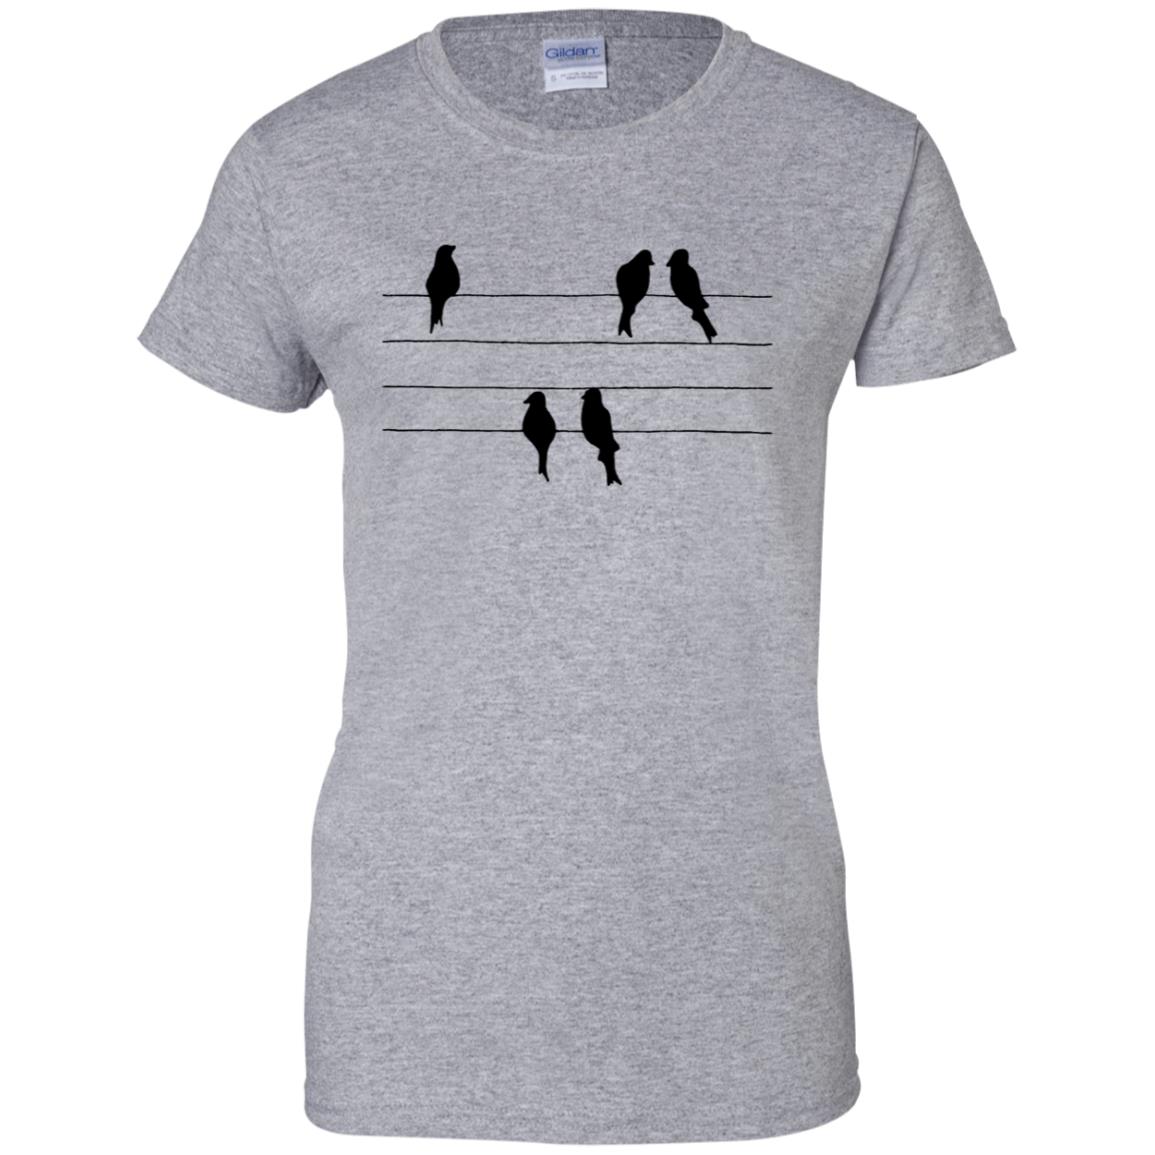 Birds On A Wire T Shirt - 10% Off - FavorMerch